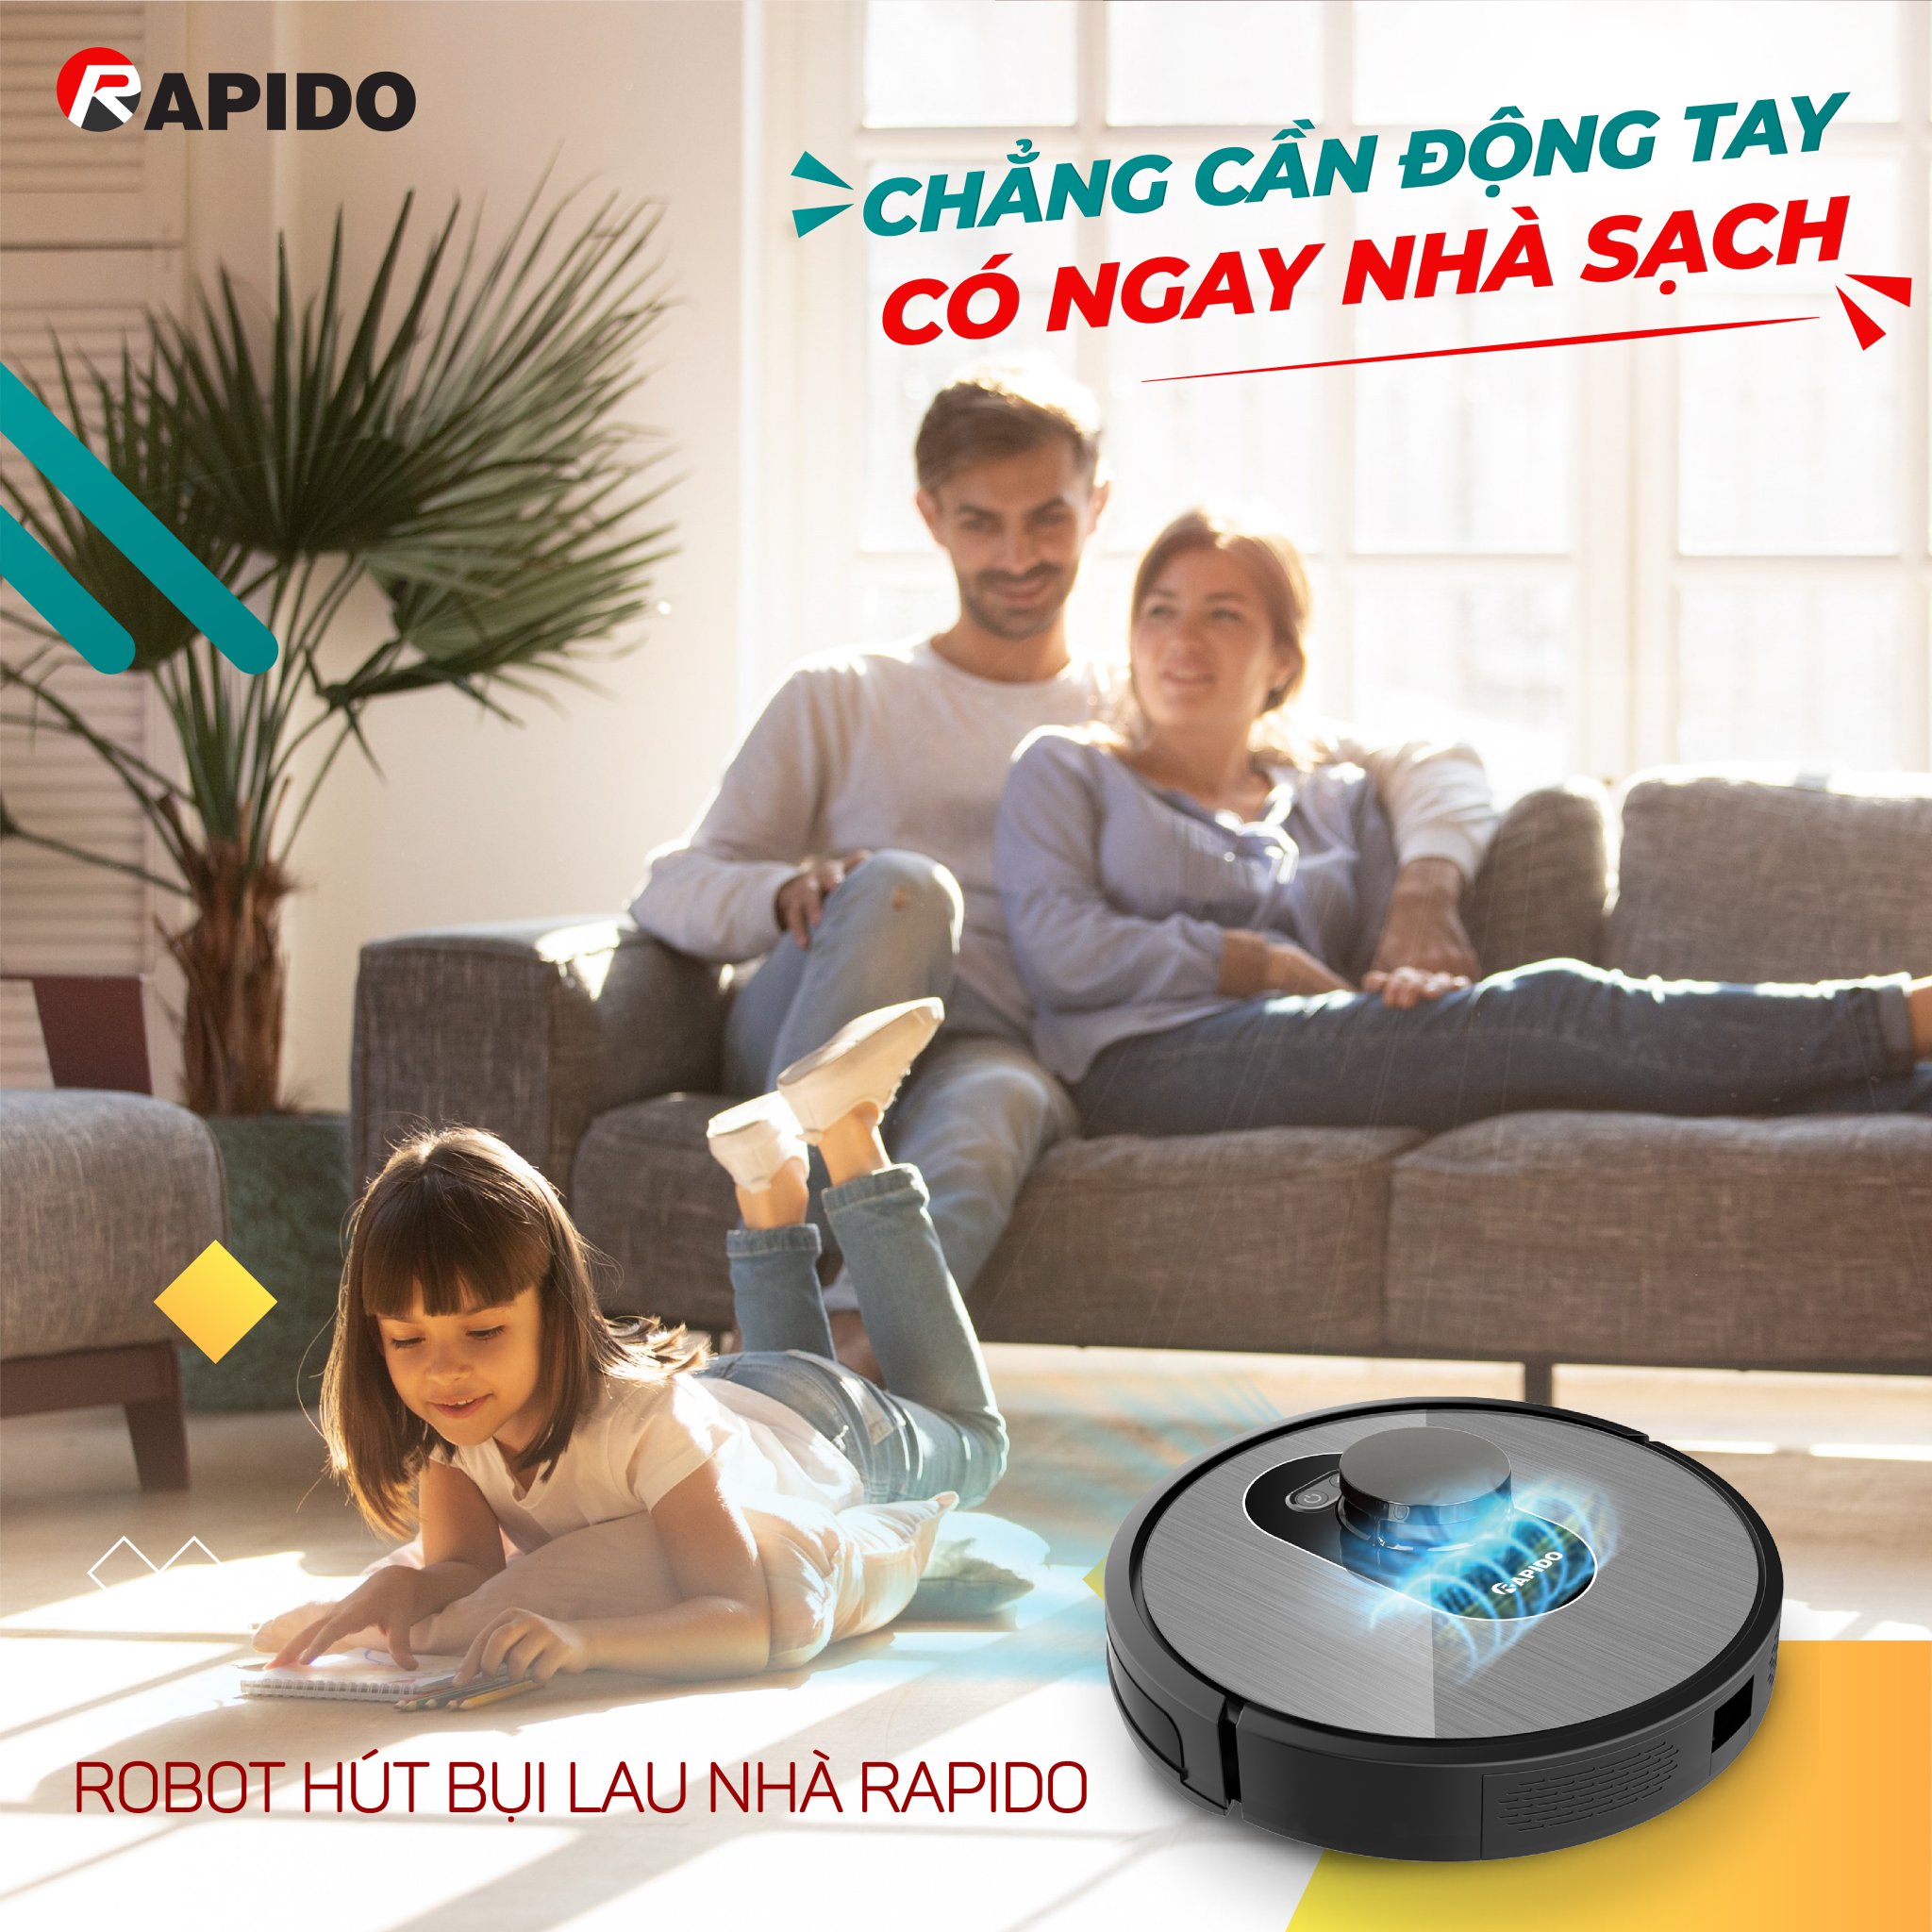 Robot hút bụi lau nhà Rapido mang lại cuộc sống thảnh thơi cho cả gia đình